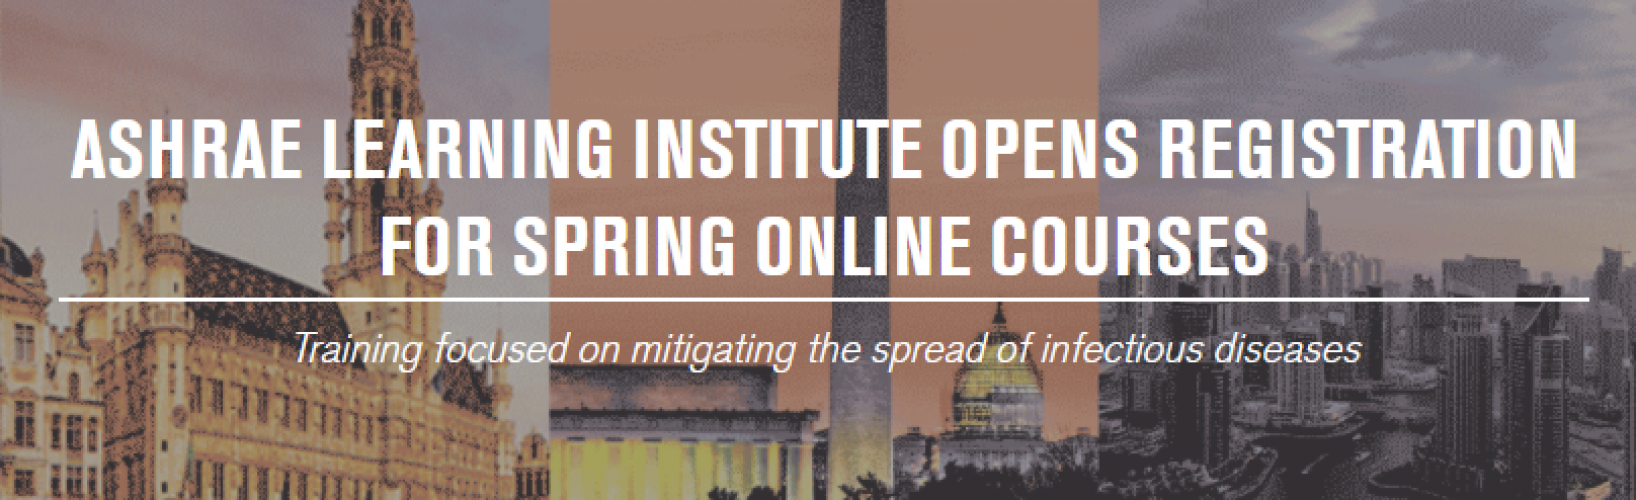 El Instituto de Aprendizaje ASHRAE abre el registro para los cursos en línea de primavera